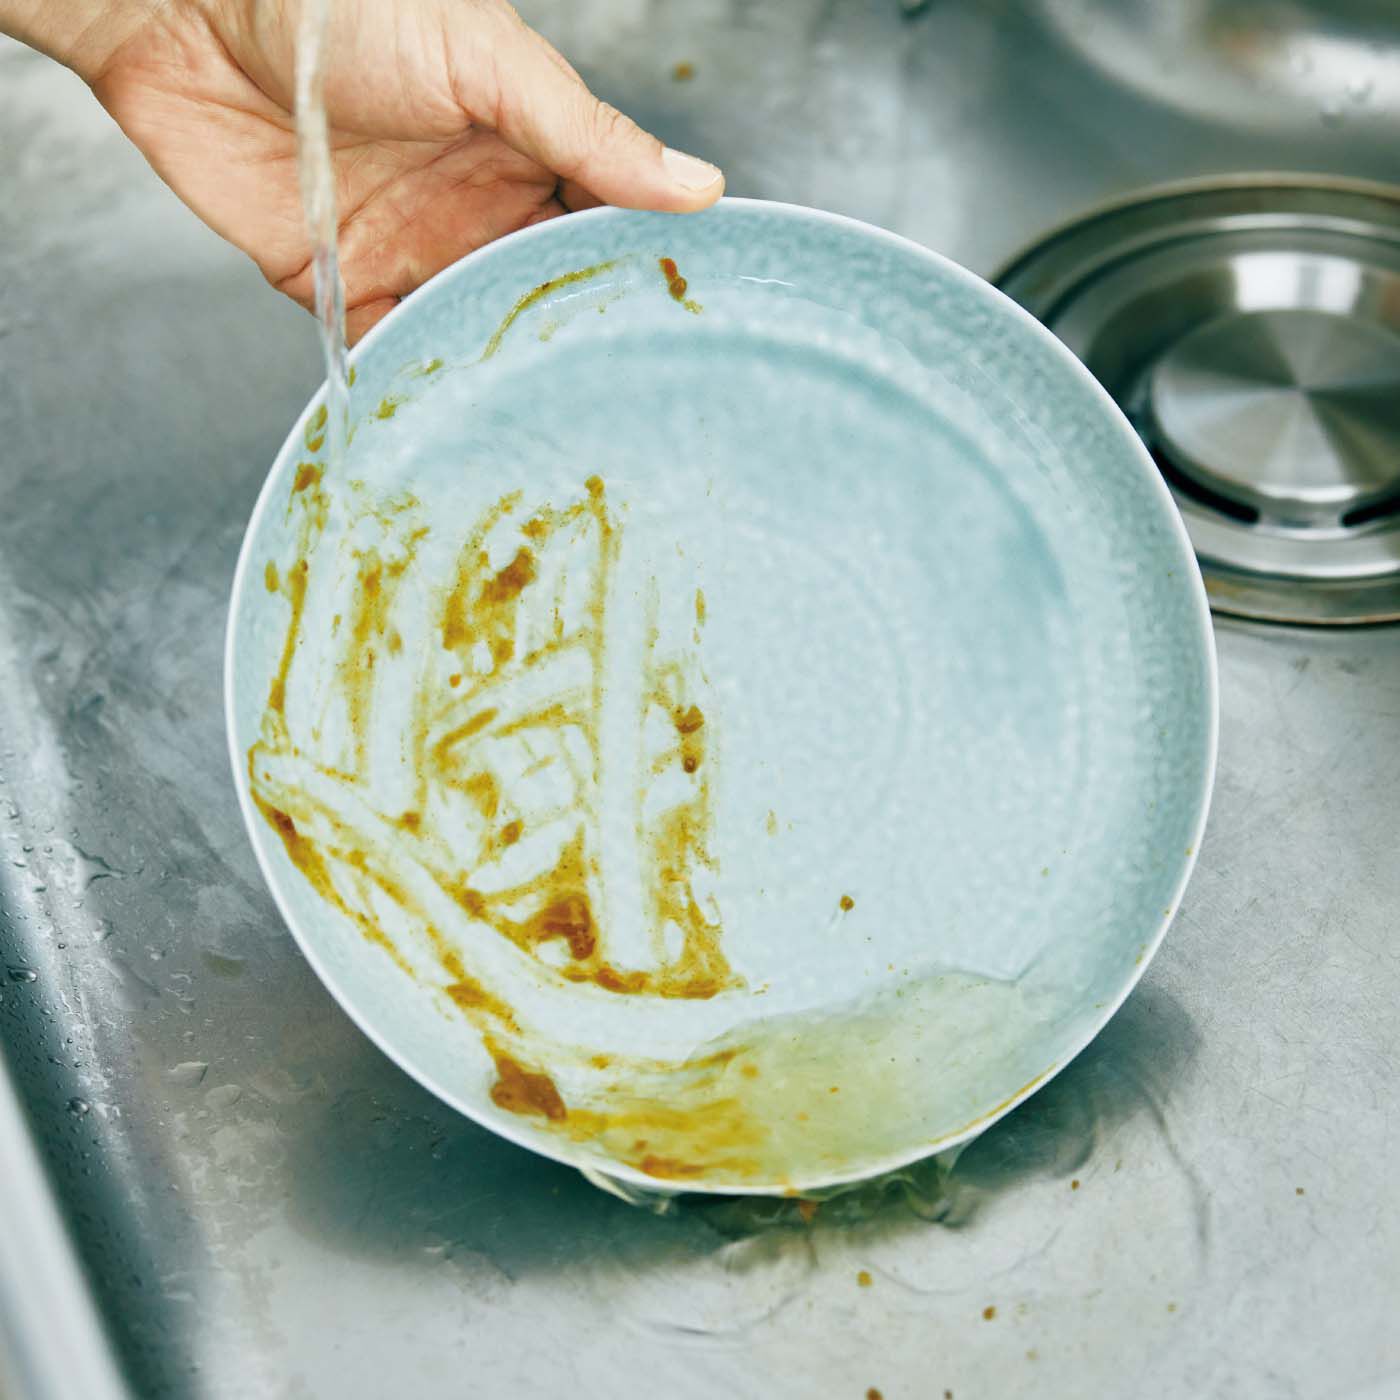 フェリシモの雑貨 Kraso|1/d DISH SOAP 食器用洗剤の会|お皿の右半分だけスプレーして水を流すとこんなカンジに。